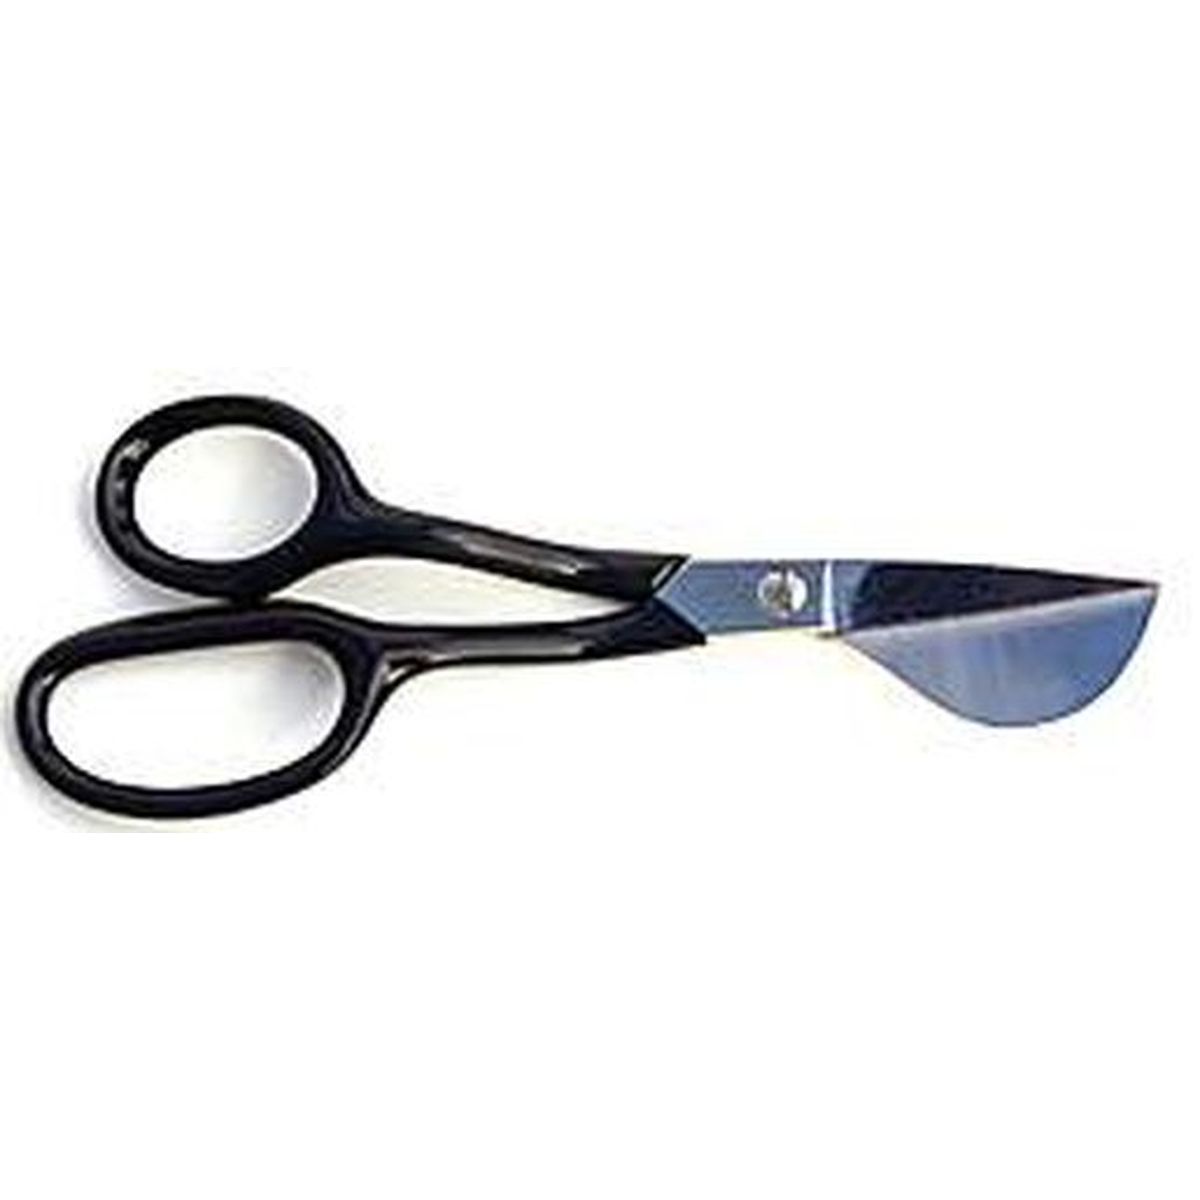 scissors 7=180mm  